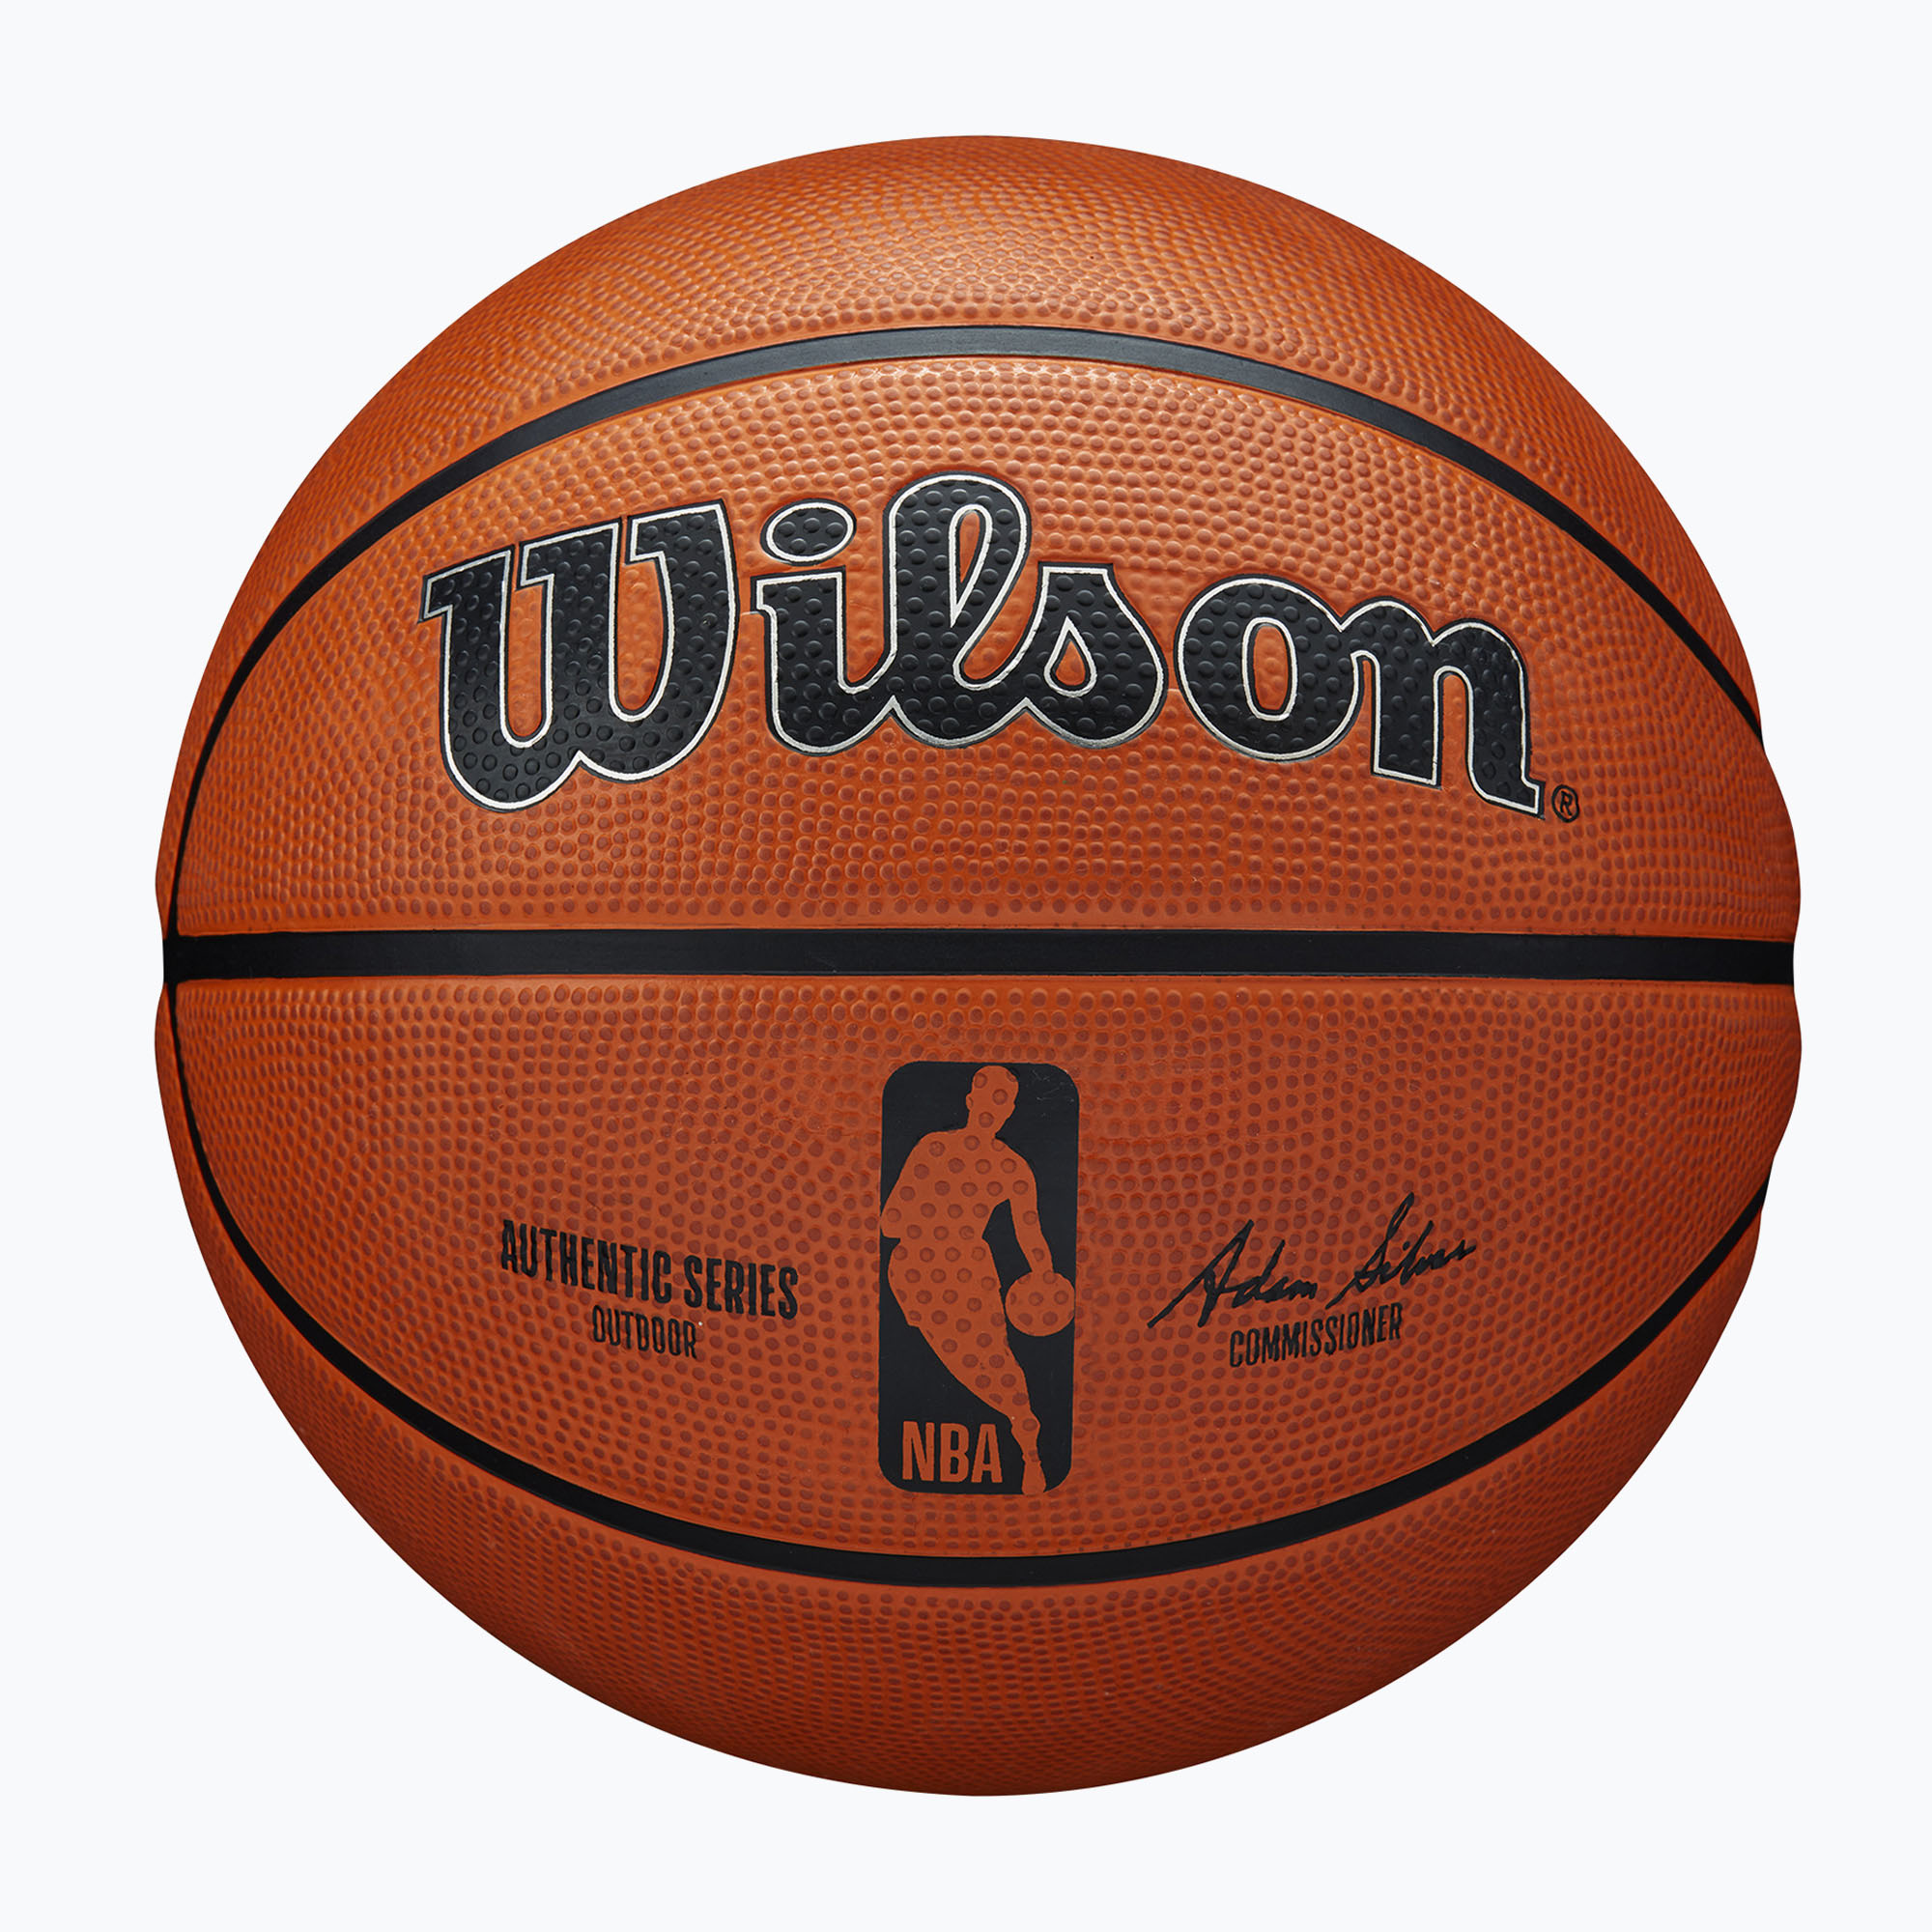 Уилсън NBA автентична серия баскетбол на открито WTB7300XB05 размер 5